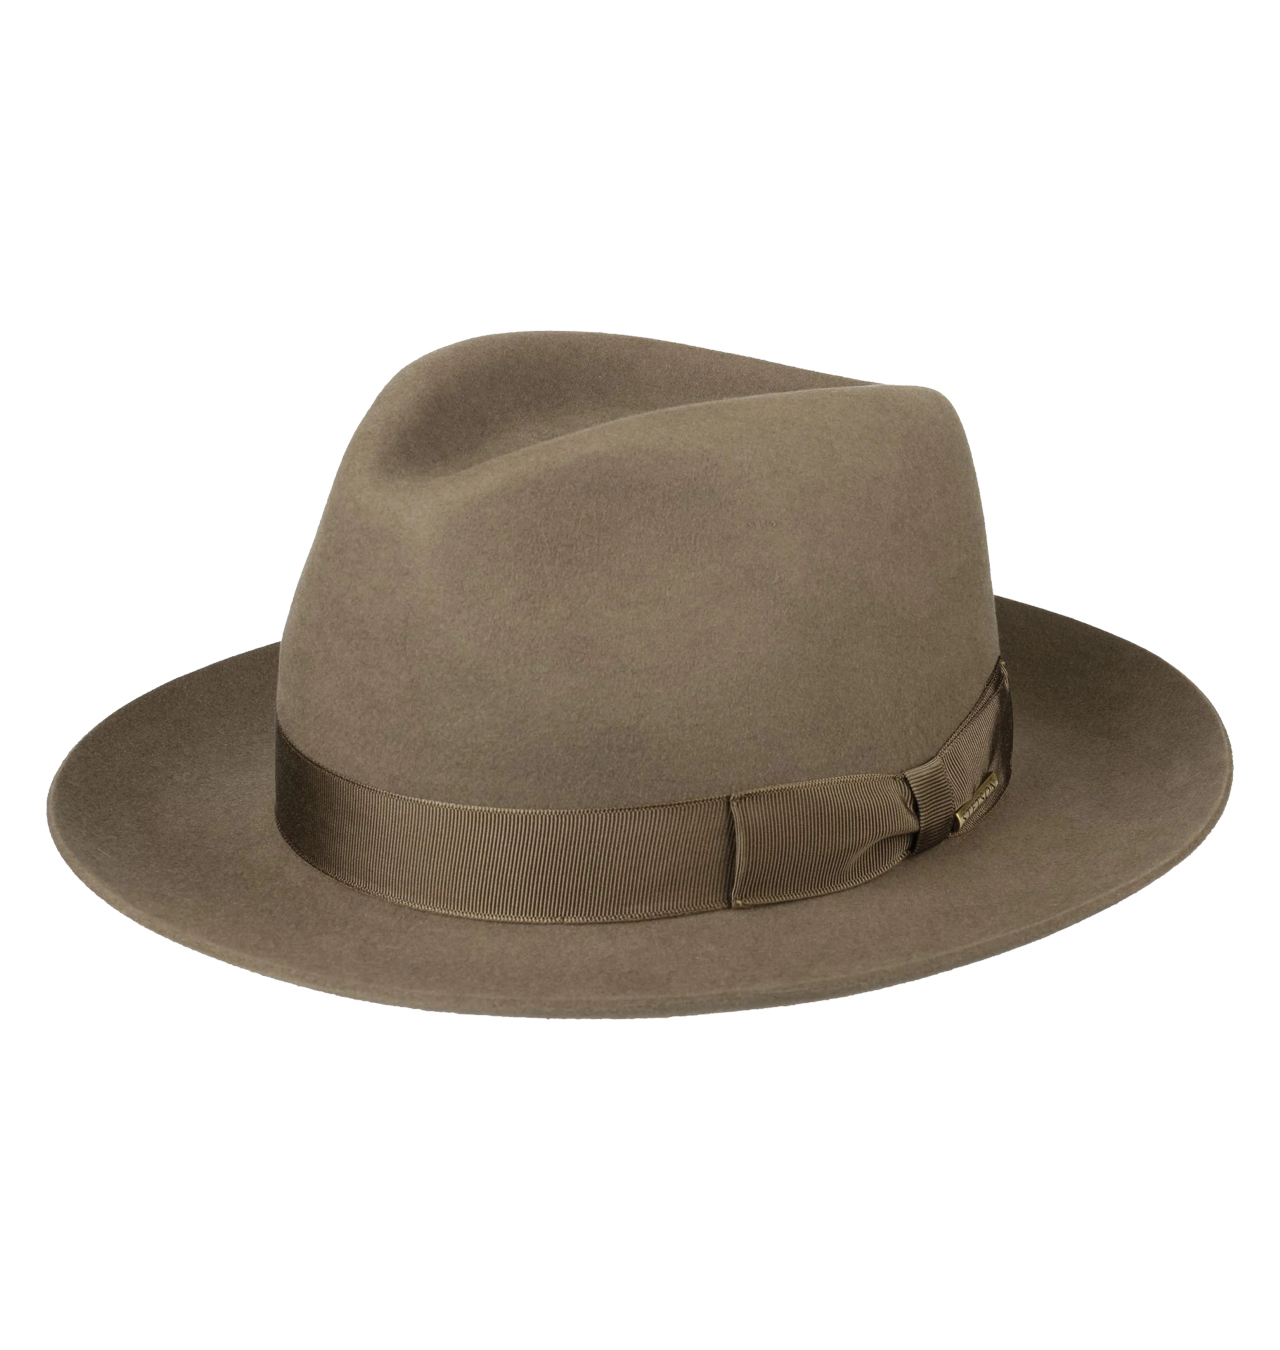 Stetson - Penn Bogart Hat - Khaki